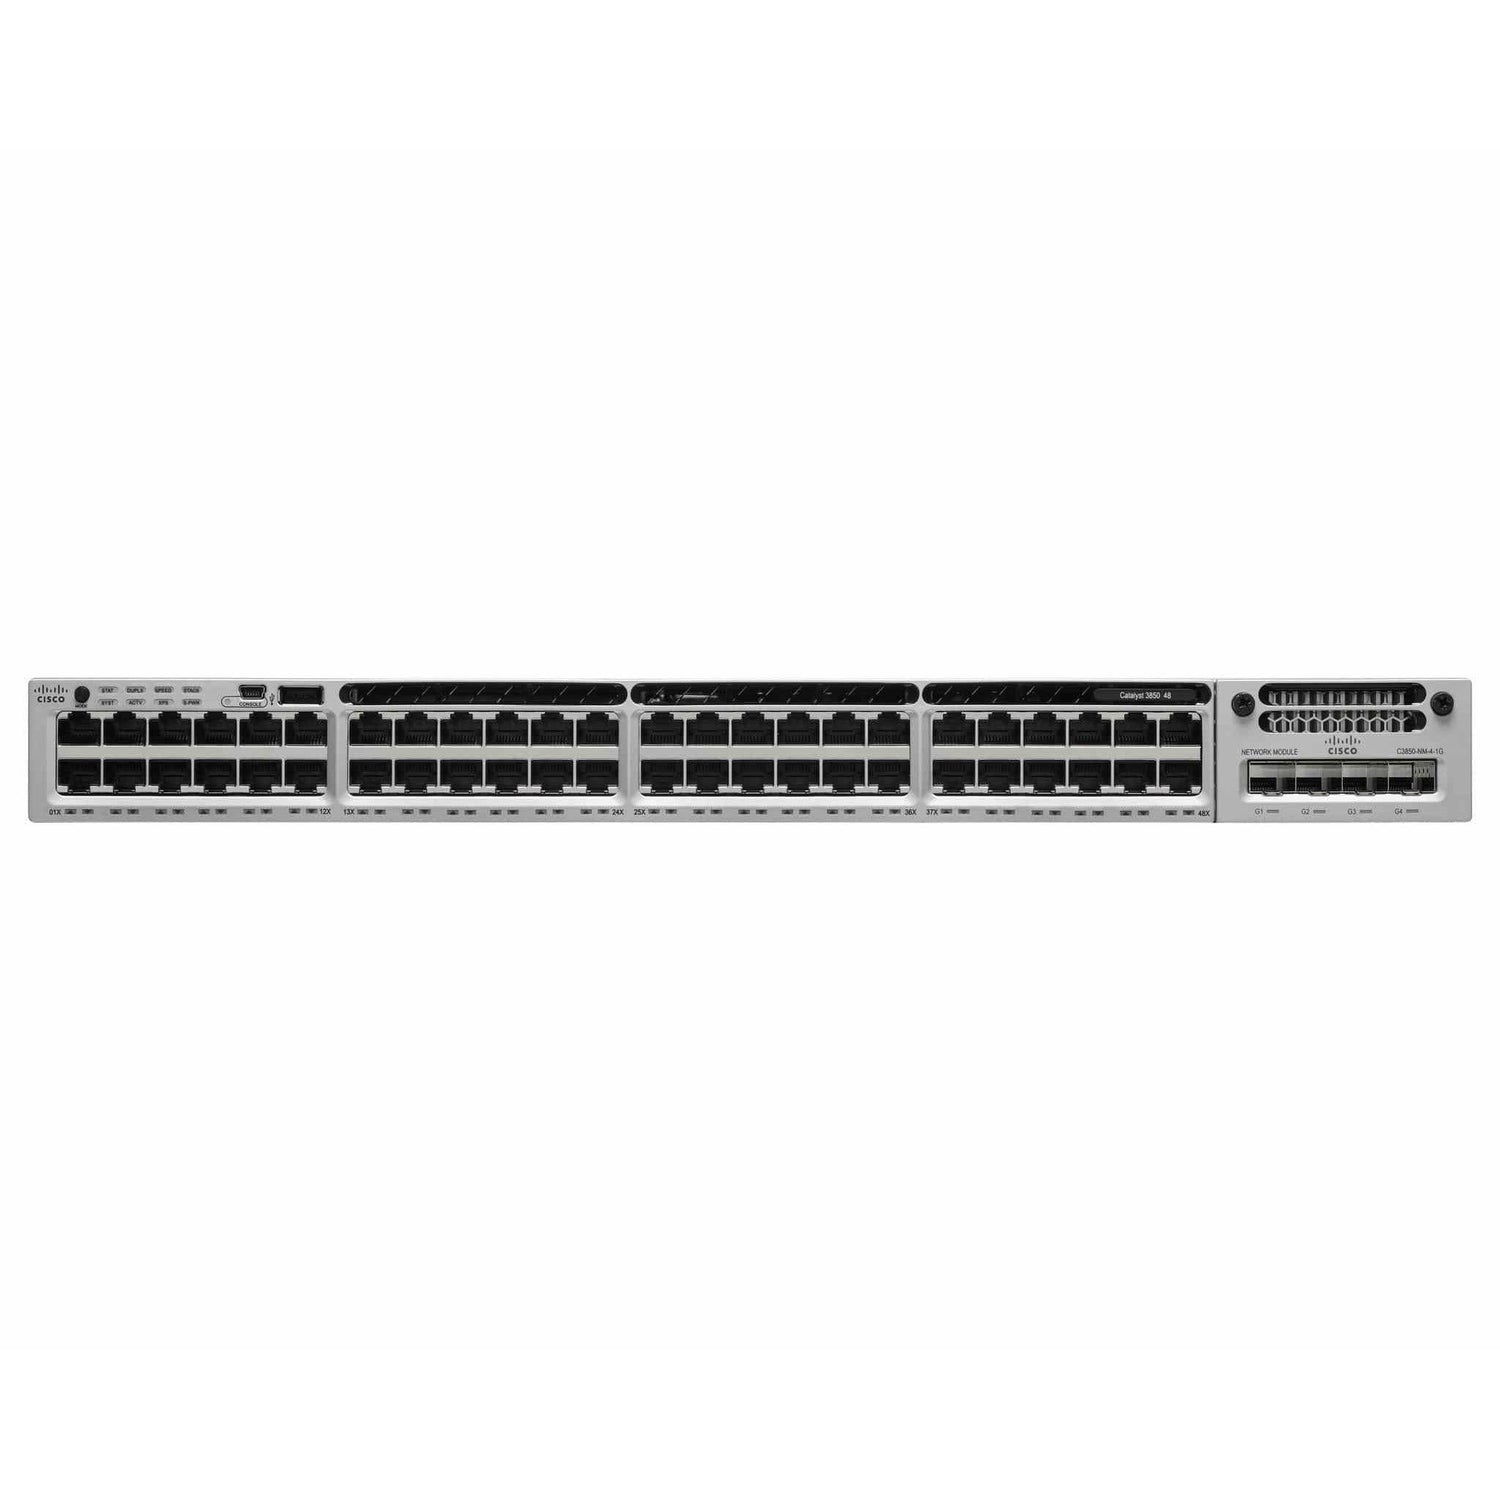 Cisco Catalyst C3850 48 Port Gigabit Switch - WS-C3850-48P-S - WS-C3850-48P-S-R - Reef Telecom